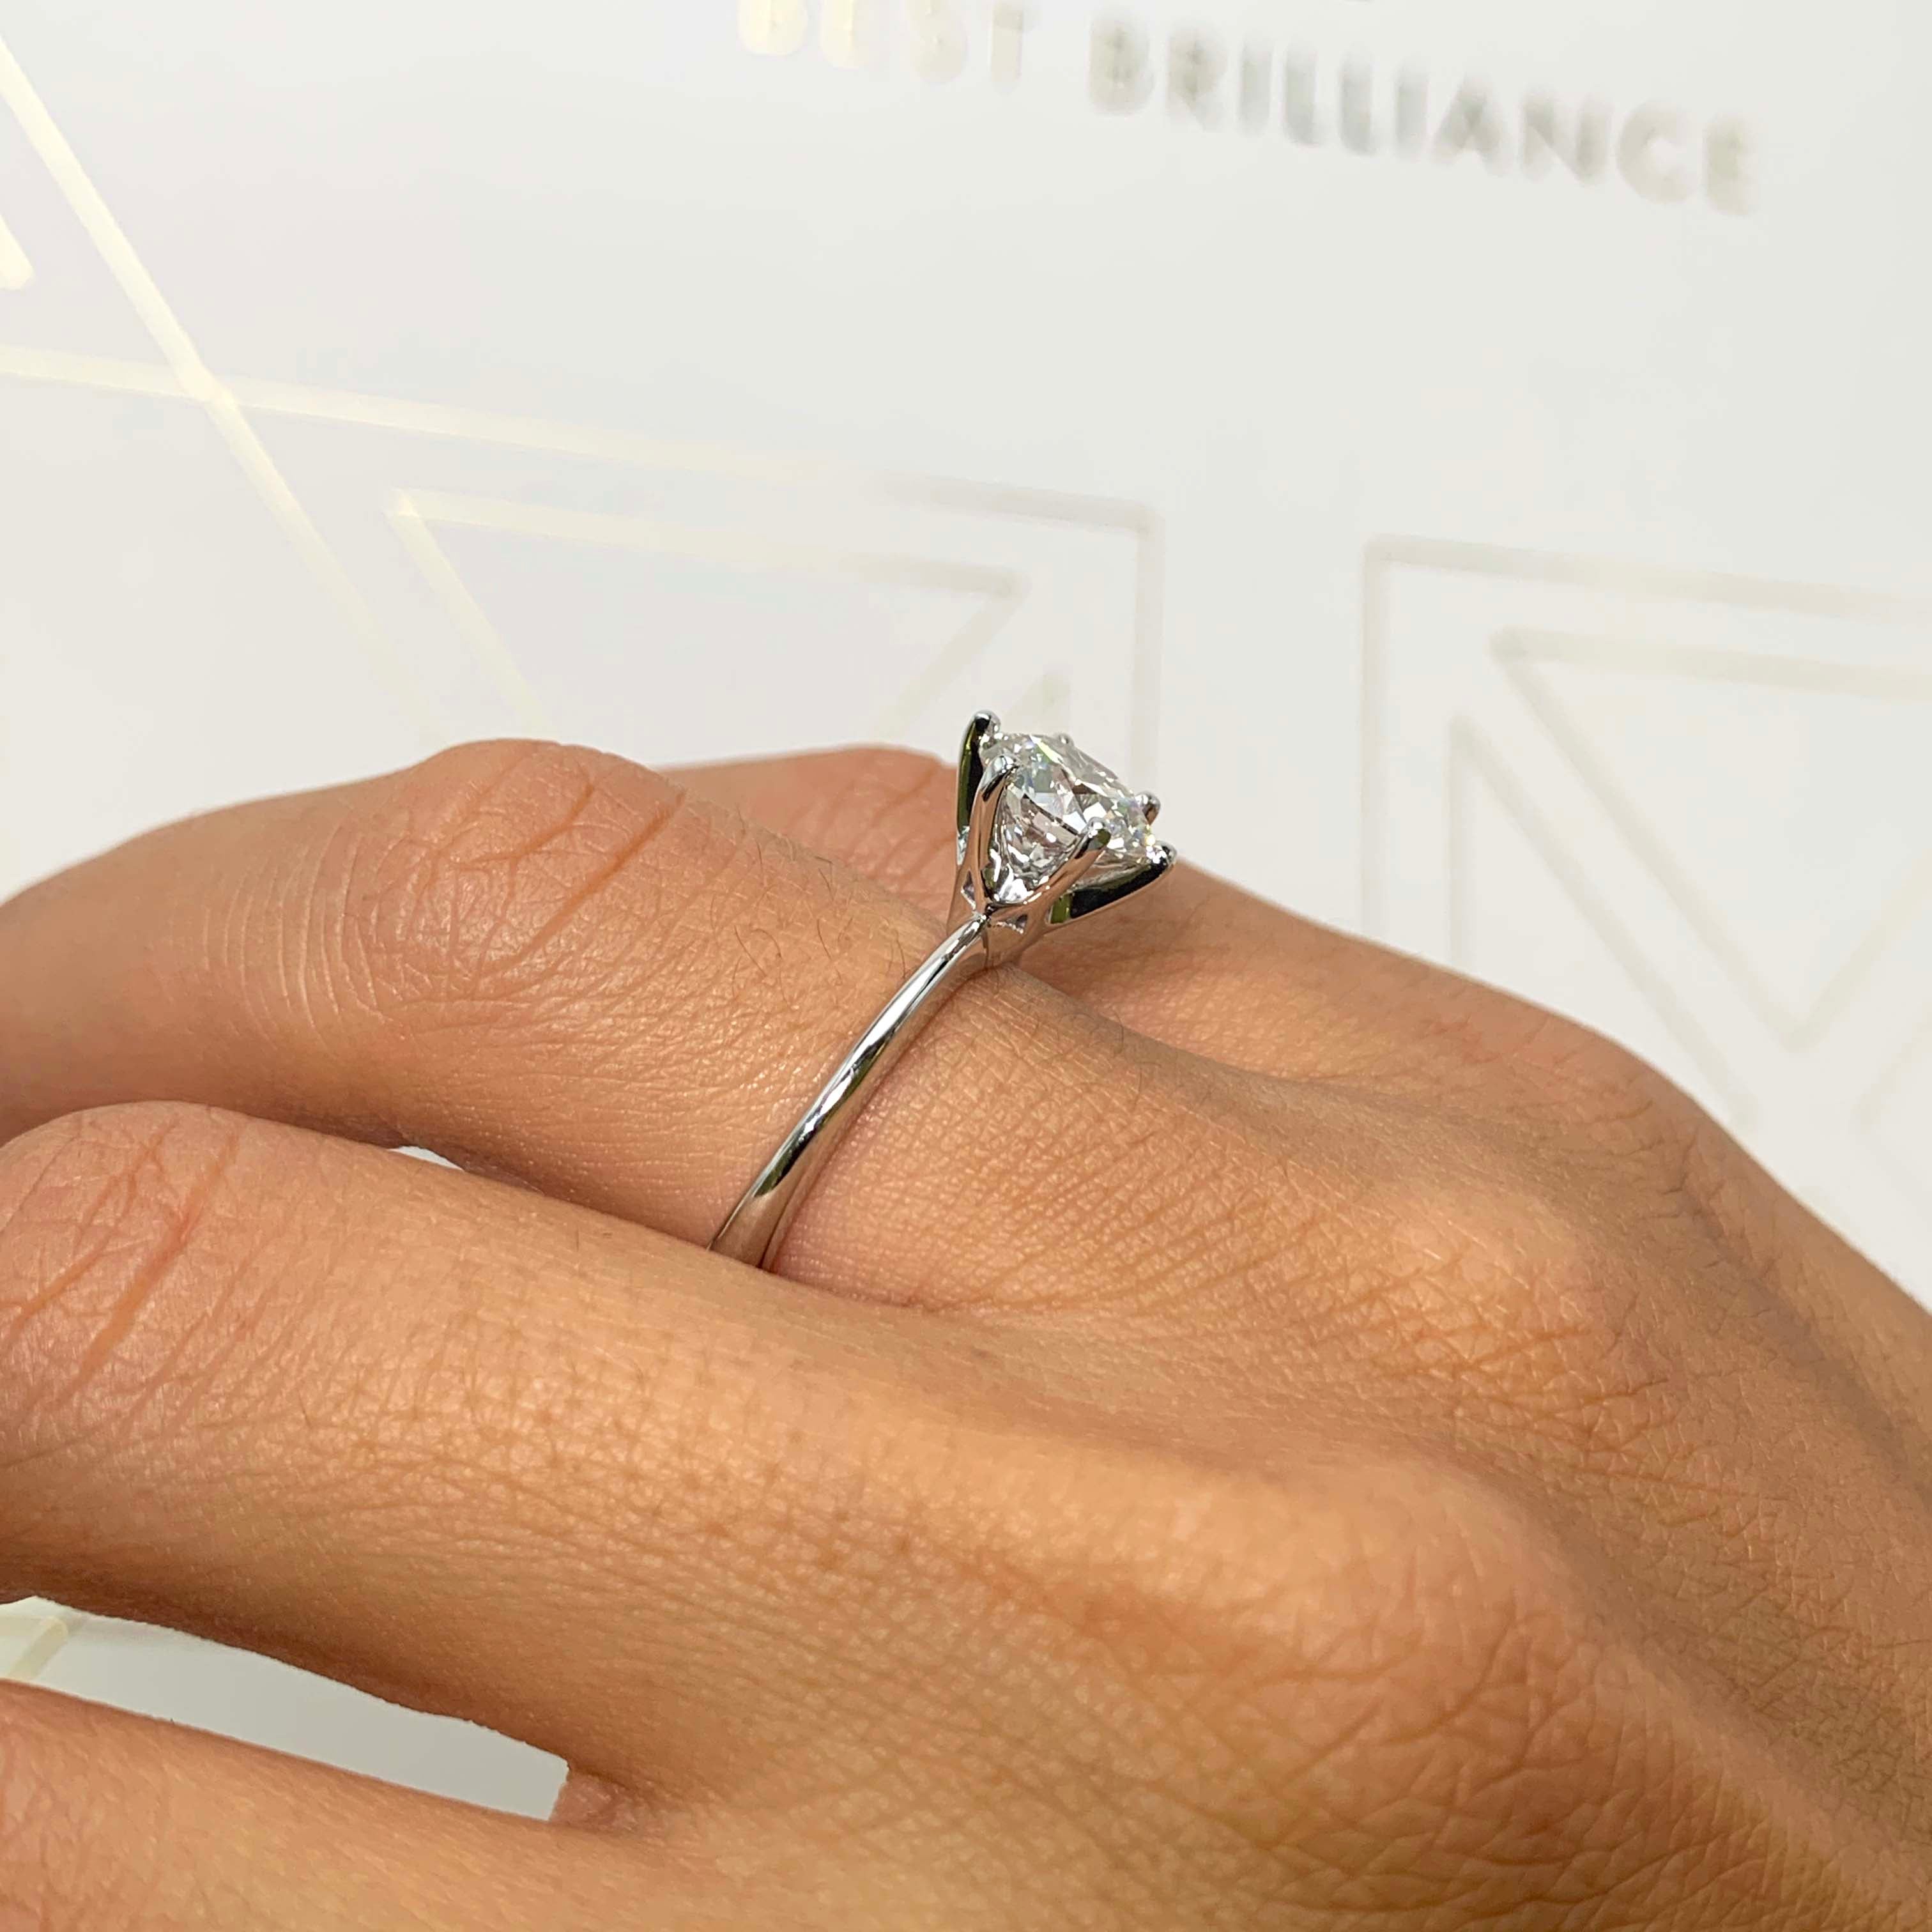 Samantha Diamond Engagement Ring   (2 Carat) -14K White Gold